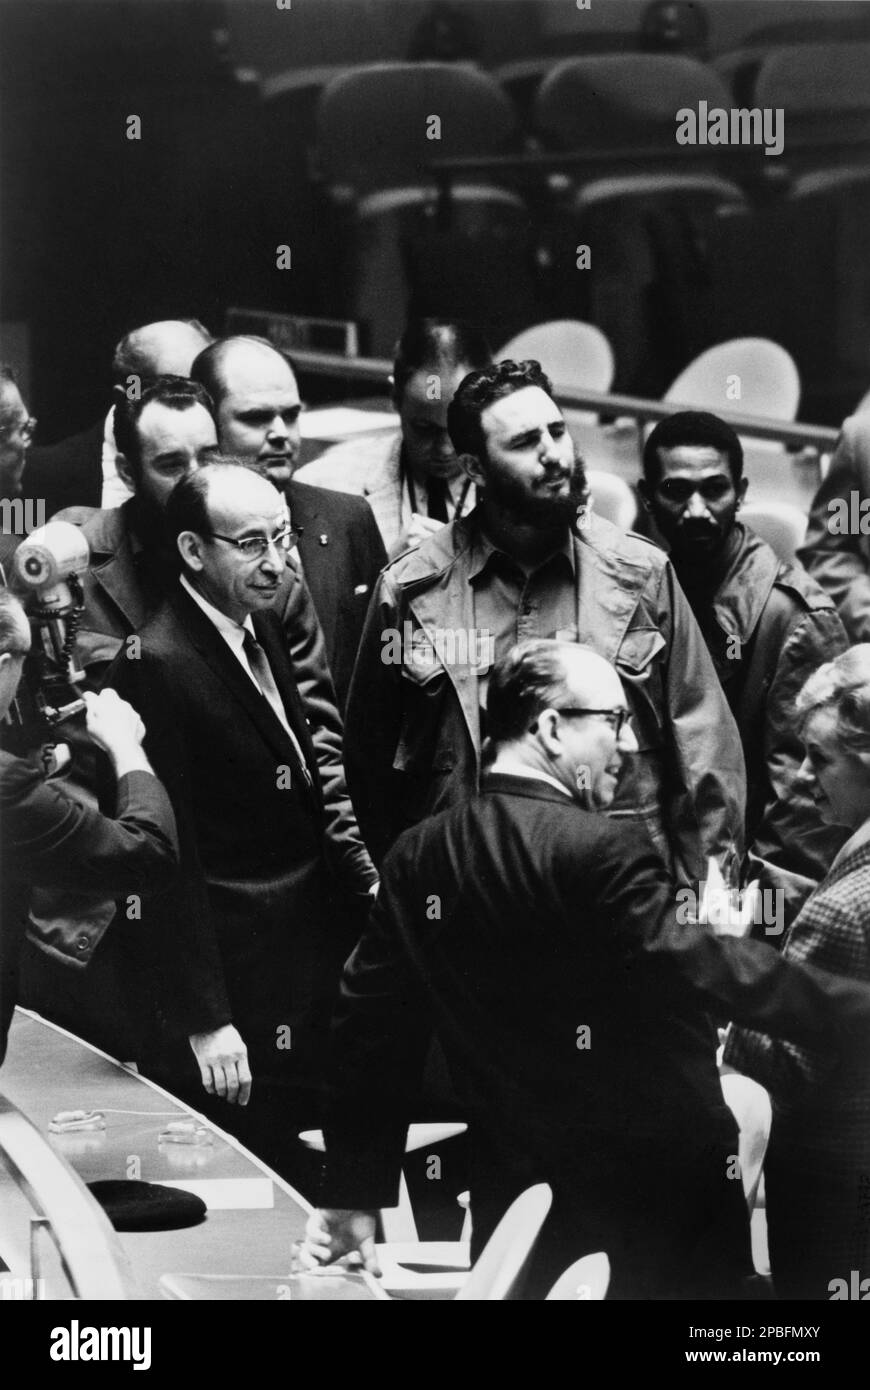 1960 , 22 settembre , Washington , USA : il presidente del politico cubano Ruz FIDEL CASTRO Ruz ( 13 agosto 1926 ) arriva alla riunione dell' Assemblea Generale delle Nazioni Unite . Foto di Warren K. Leffler della rivista U.S. News & World Report - POLITICO - POLITICA - ONU - NAZIONI UNITE - POLITICA - SOCIALISTA - SOCIALISMO - SOCIALISMO - COMUNISTA - COMUNISMO - COMUNISMO - foto storiche - RIVOLTA - RIVOLUZIONE - RIVOLUZIONARIO - conferenza stampa - conferenza stampa - barba - barba ---- Archivio GBB Foto Stock